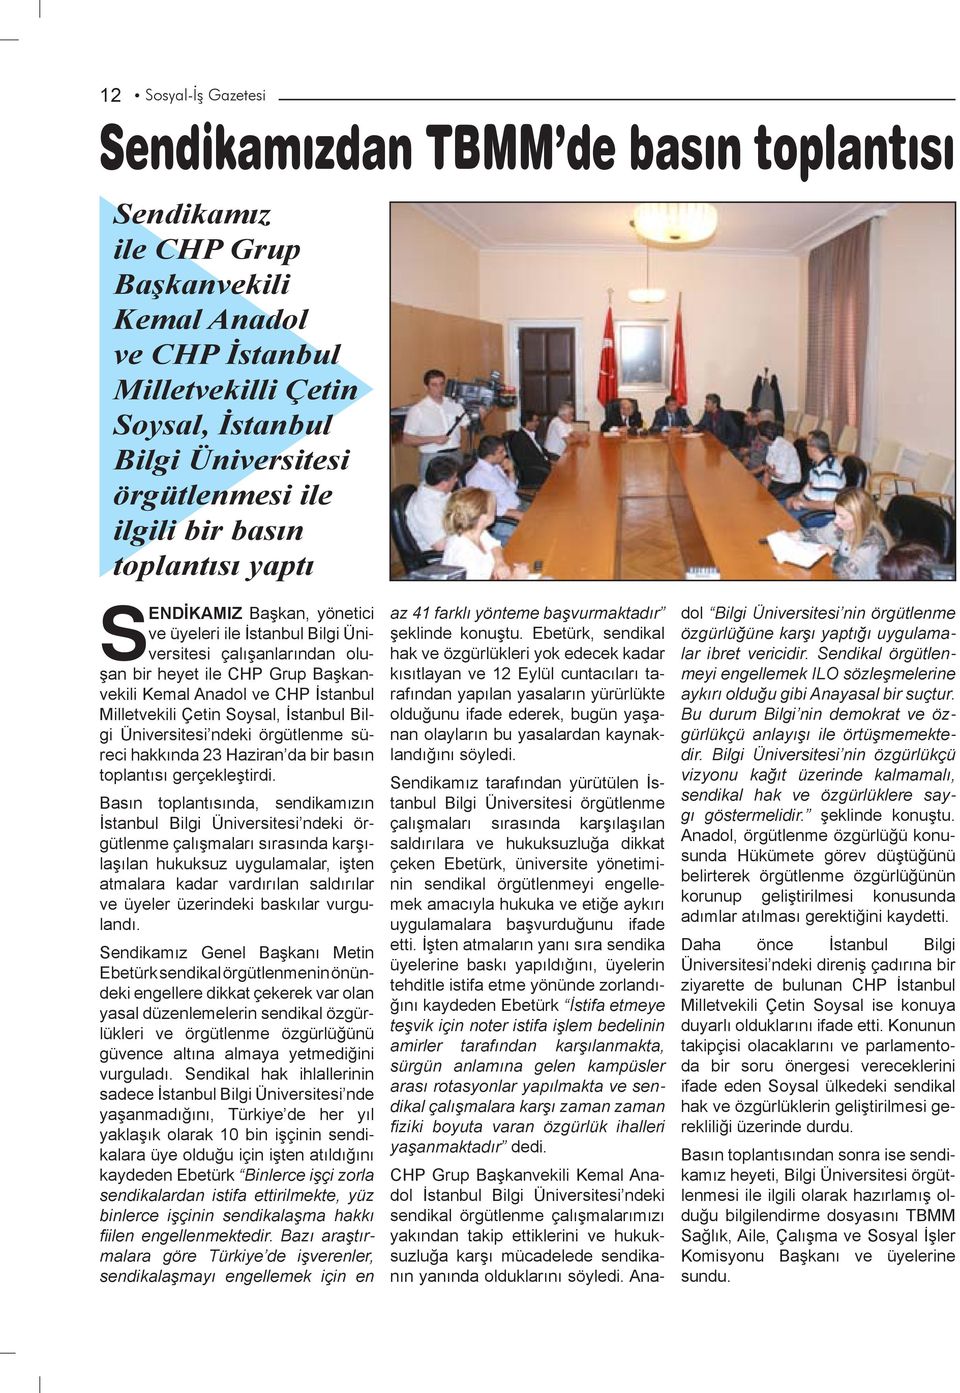 Milletvekili Çetin Soysal, İstanbul Bilgi Üniversitesi ndeki örgütlenme süreci hakkında 23 Haziran da bir basın toplantısı gerçekleştirdi.